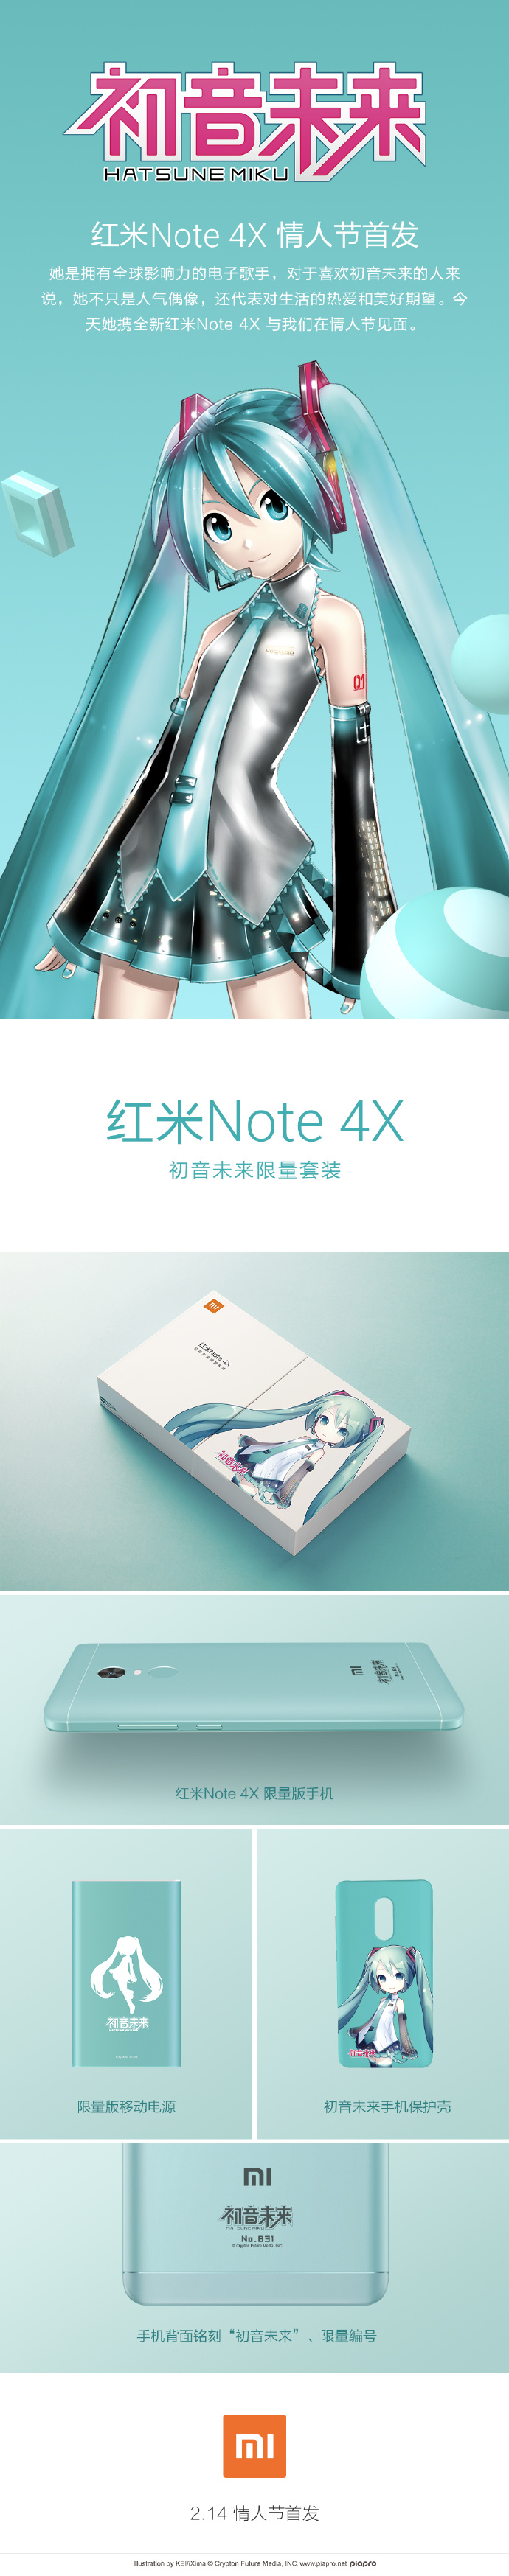 Redmi Note 4X teaser